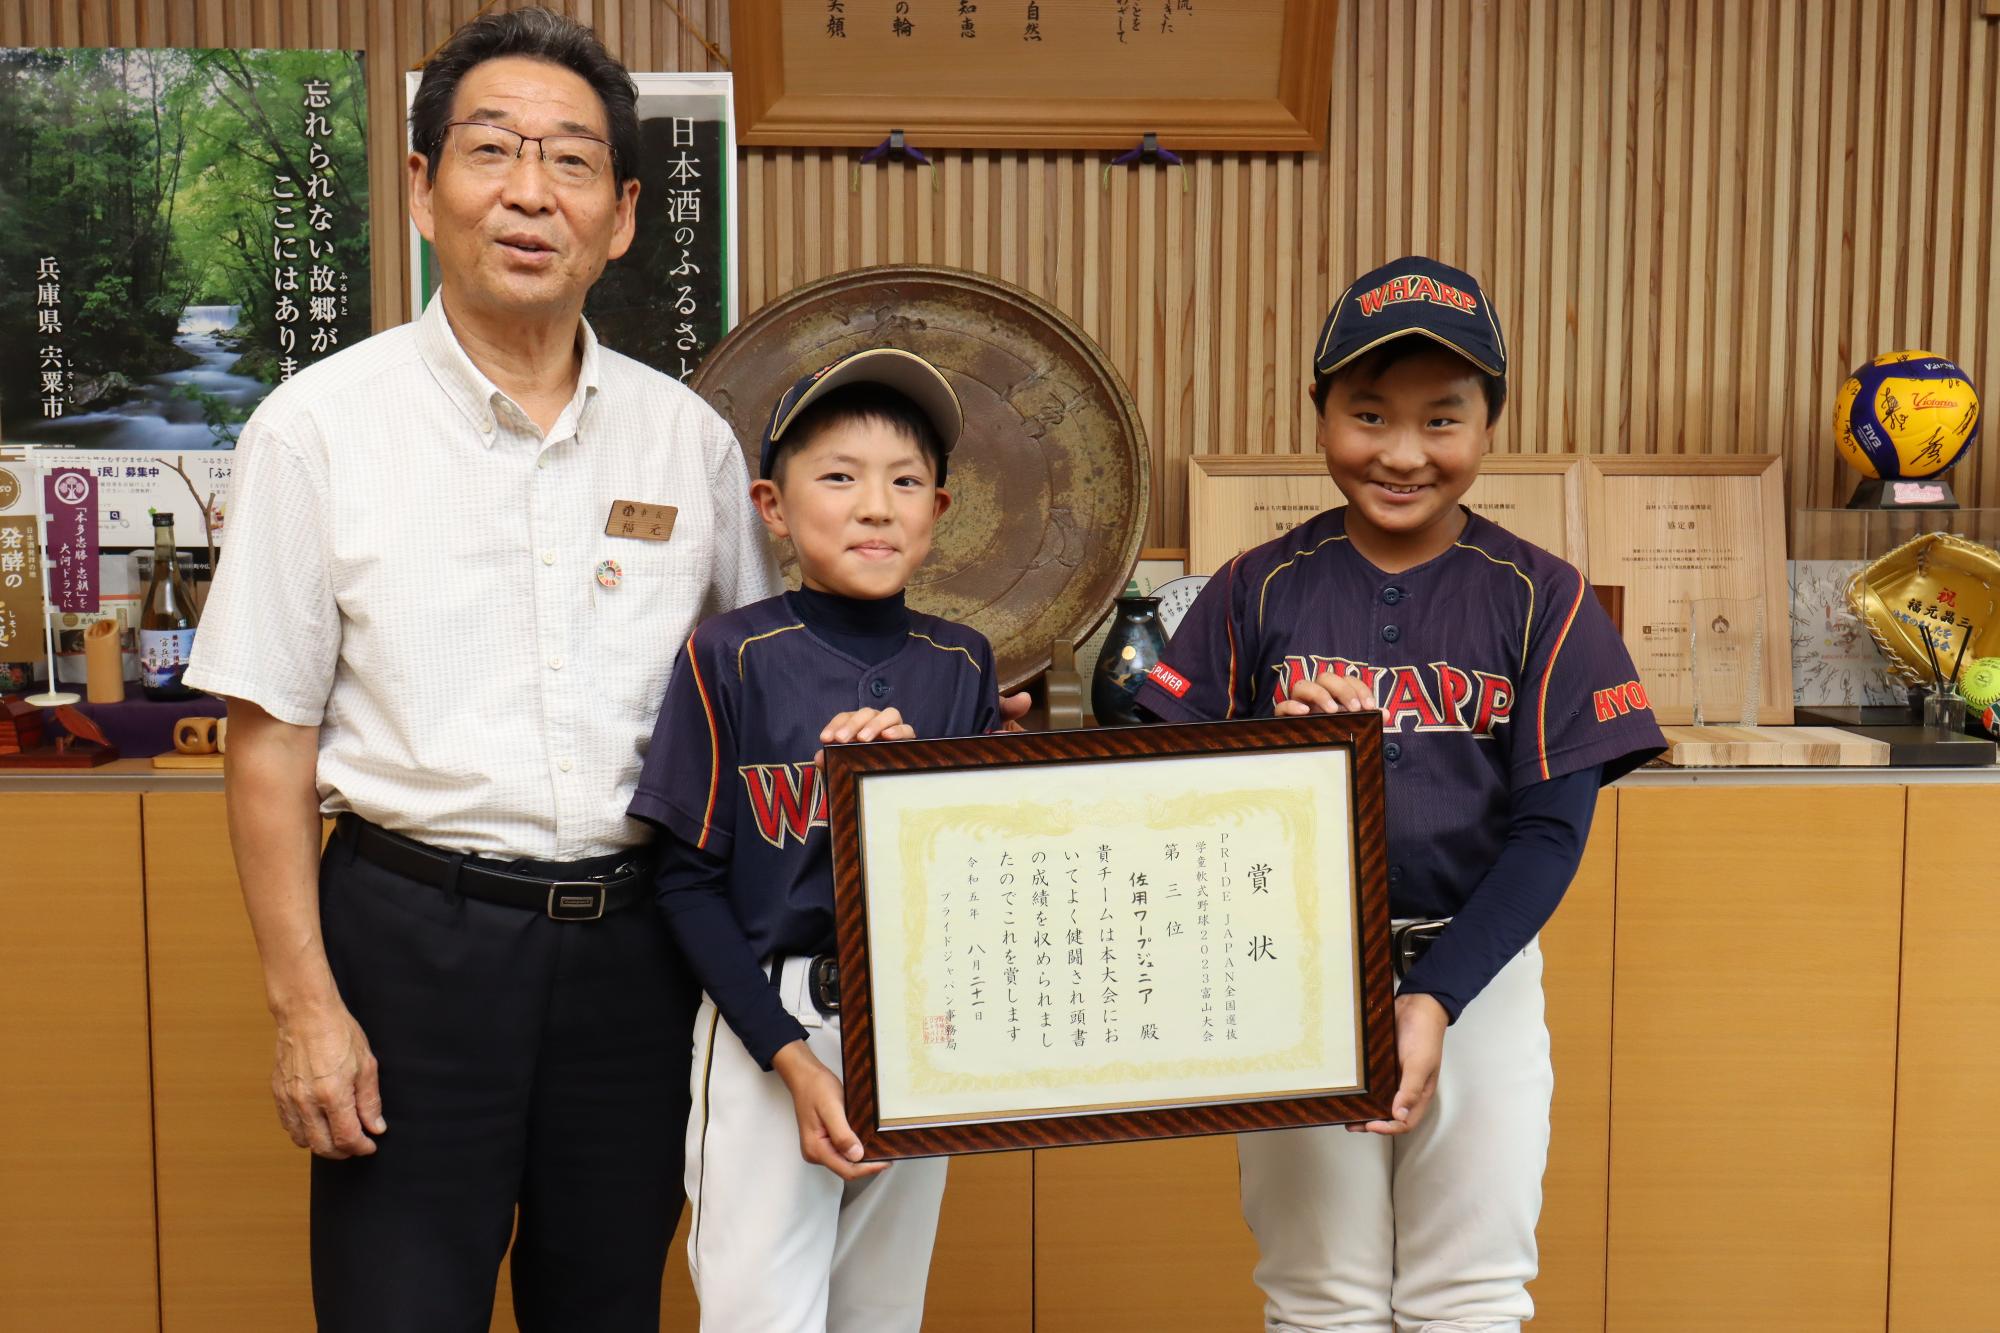 鎌田さんと寺田さんが全国3位の賞状を掲げ、福元市長と並んで正面を向いている写真